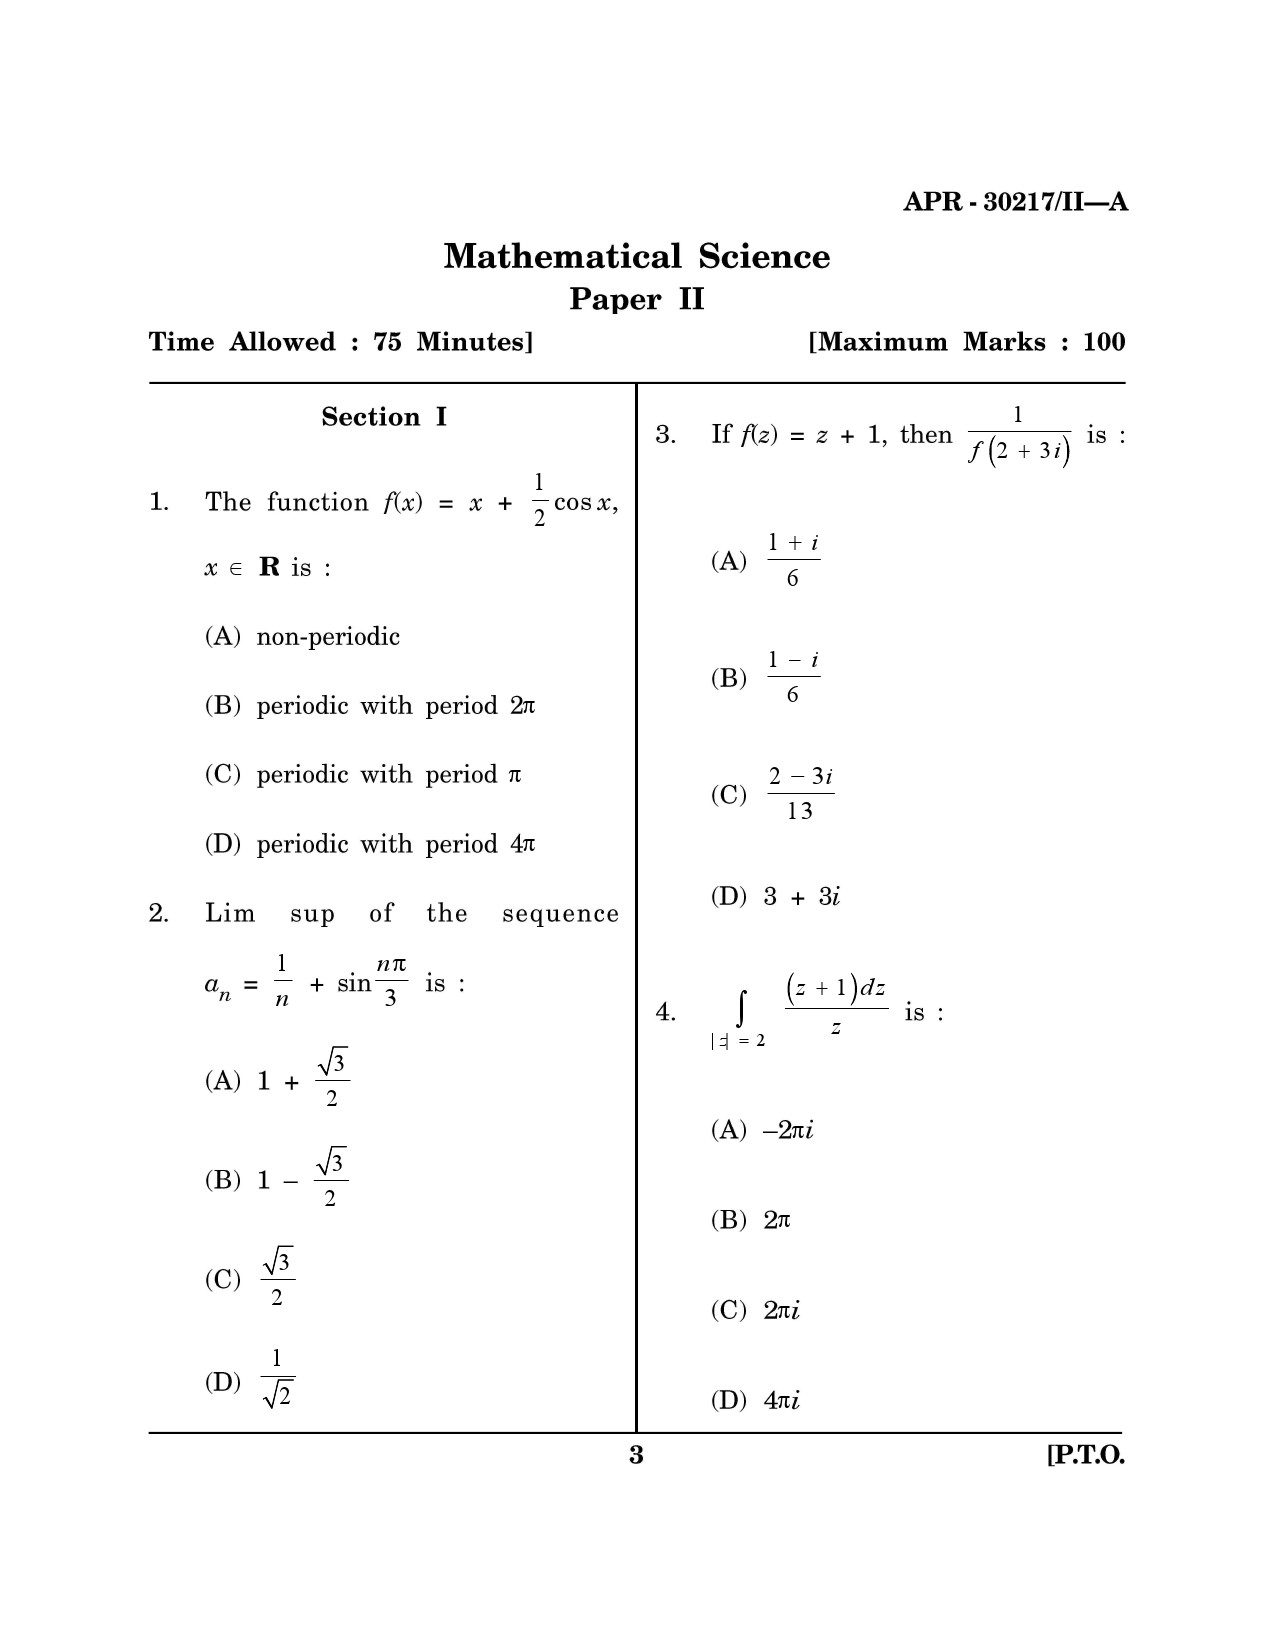 Maharashtra SET Mathematical Sciences Question Paper II April 2017 2